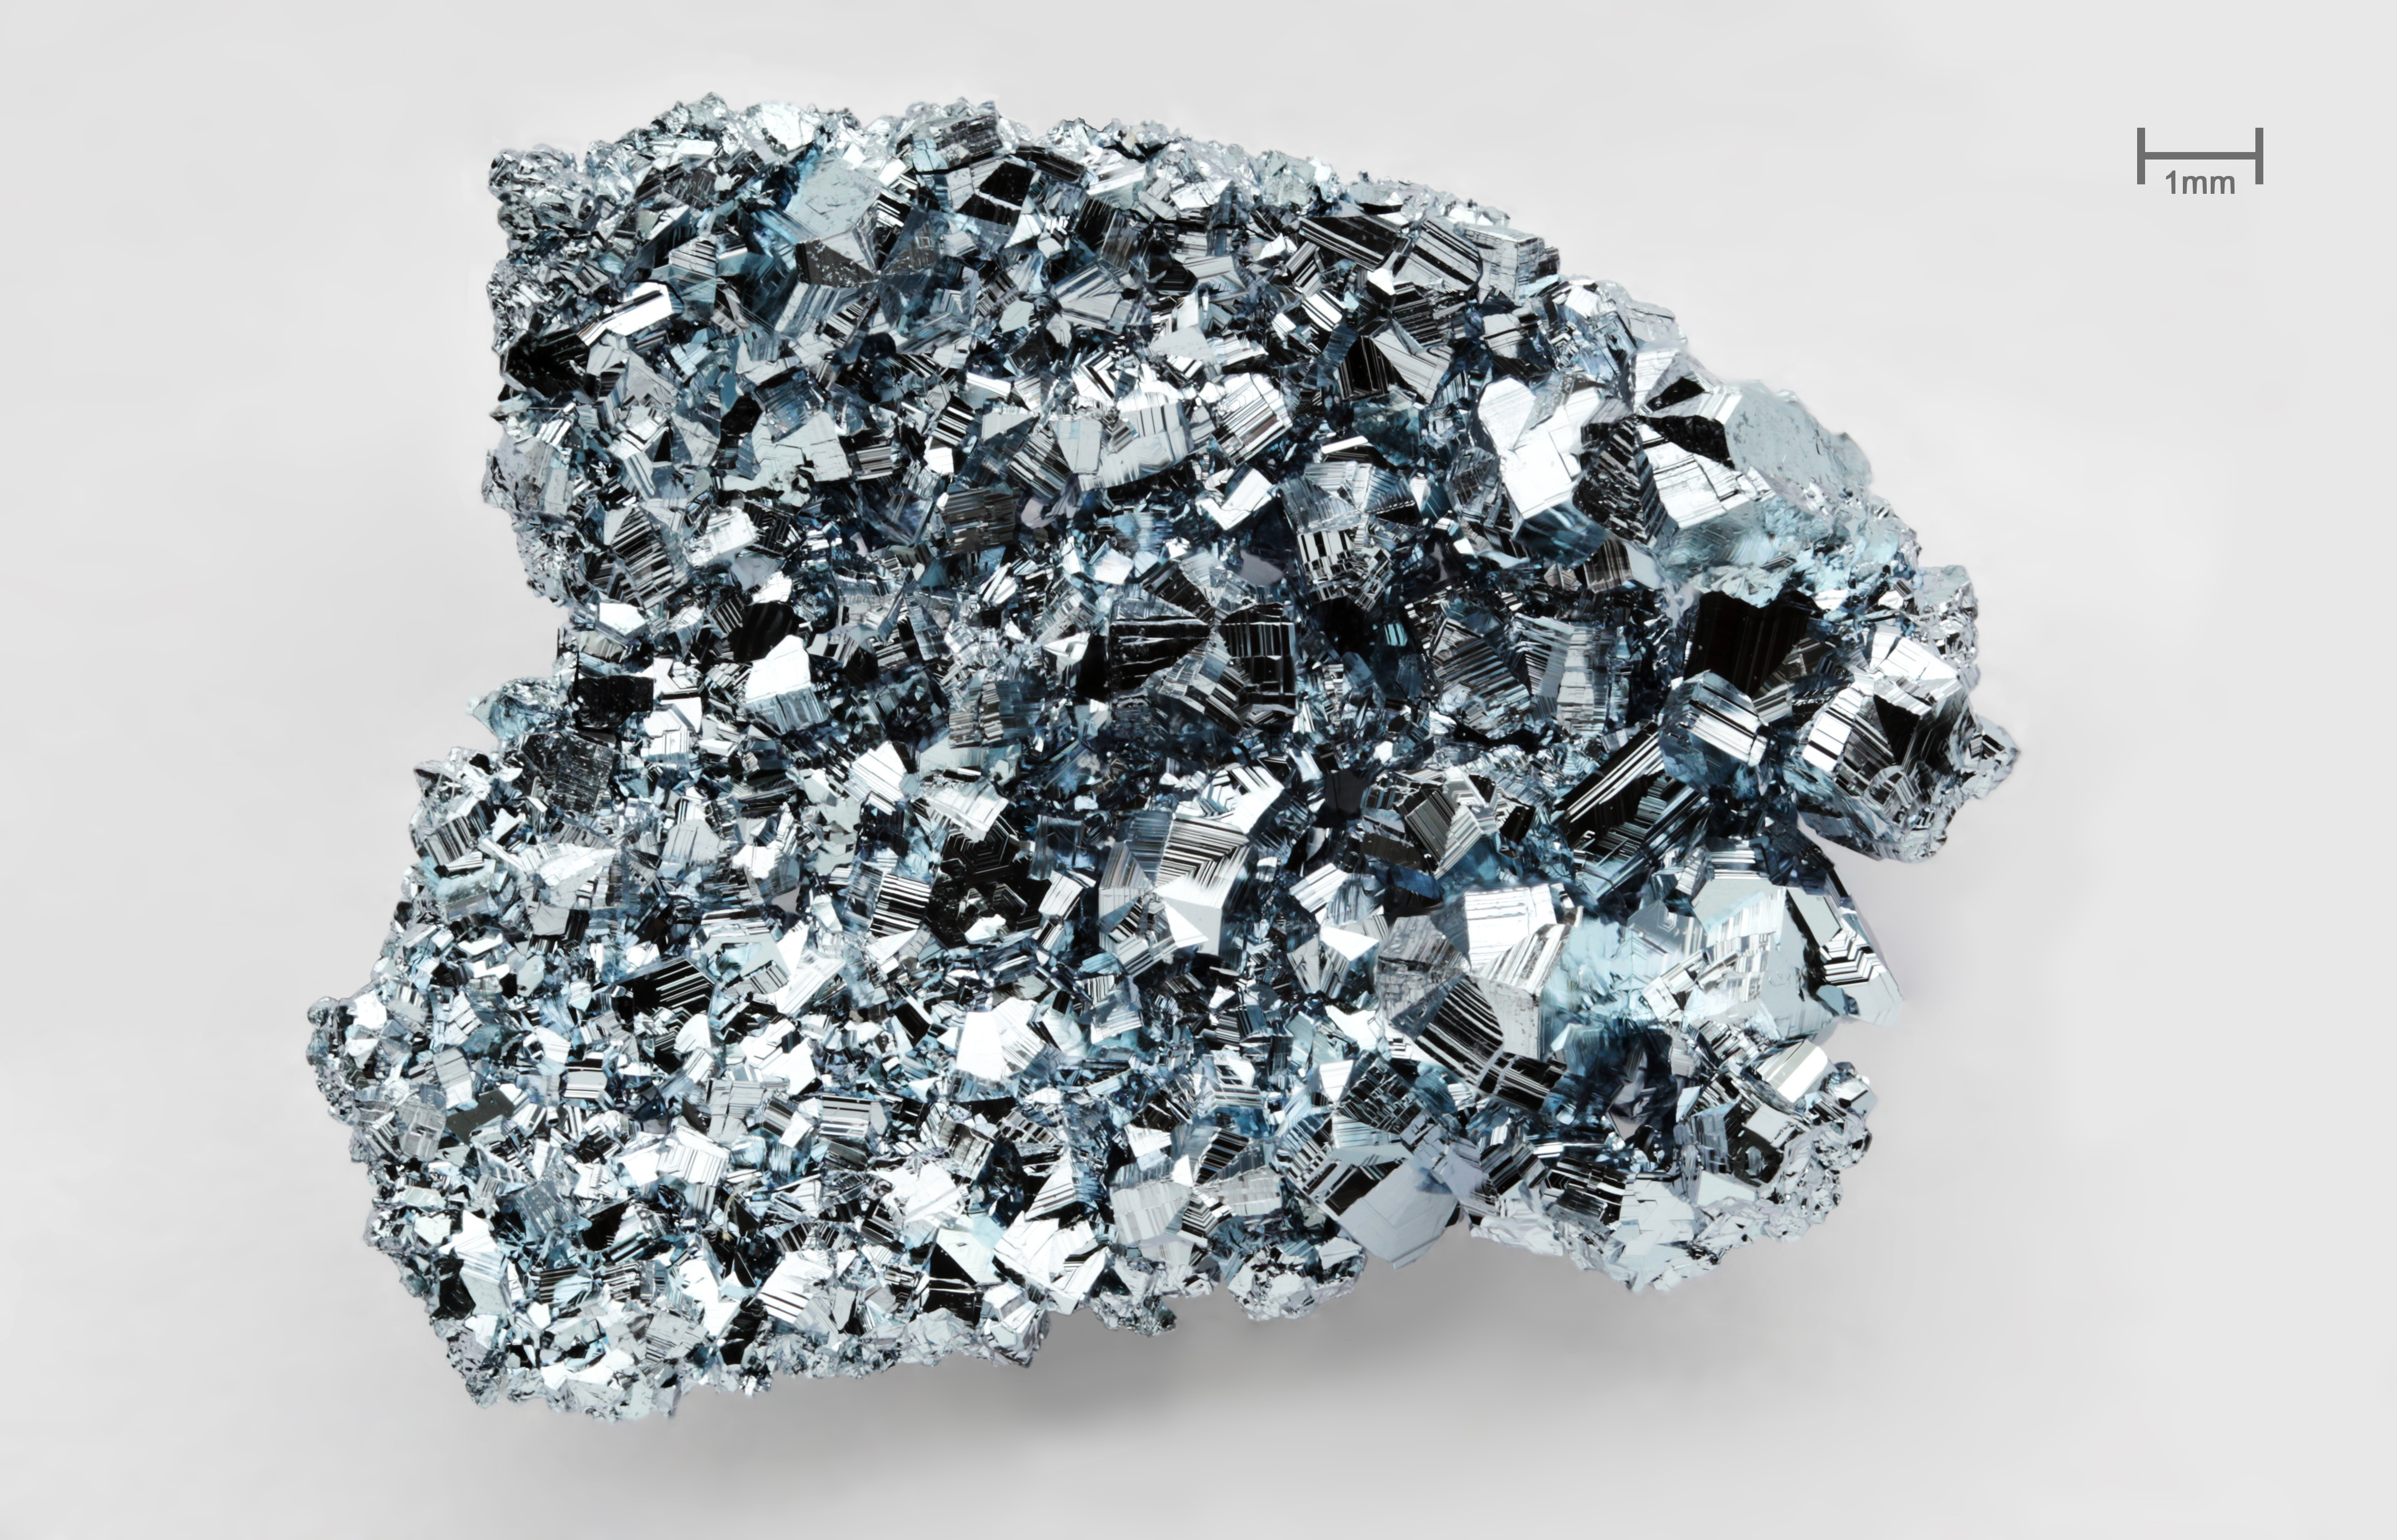 hexagonální krystalky osmia o čistotě 99,99% (via Wikimedia Commons, foto Alchemist-hp)